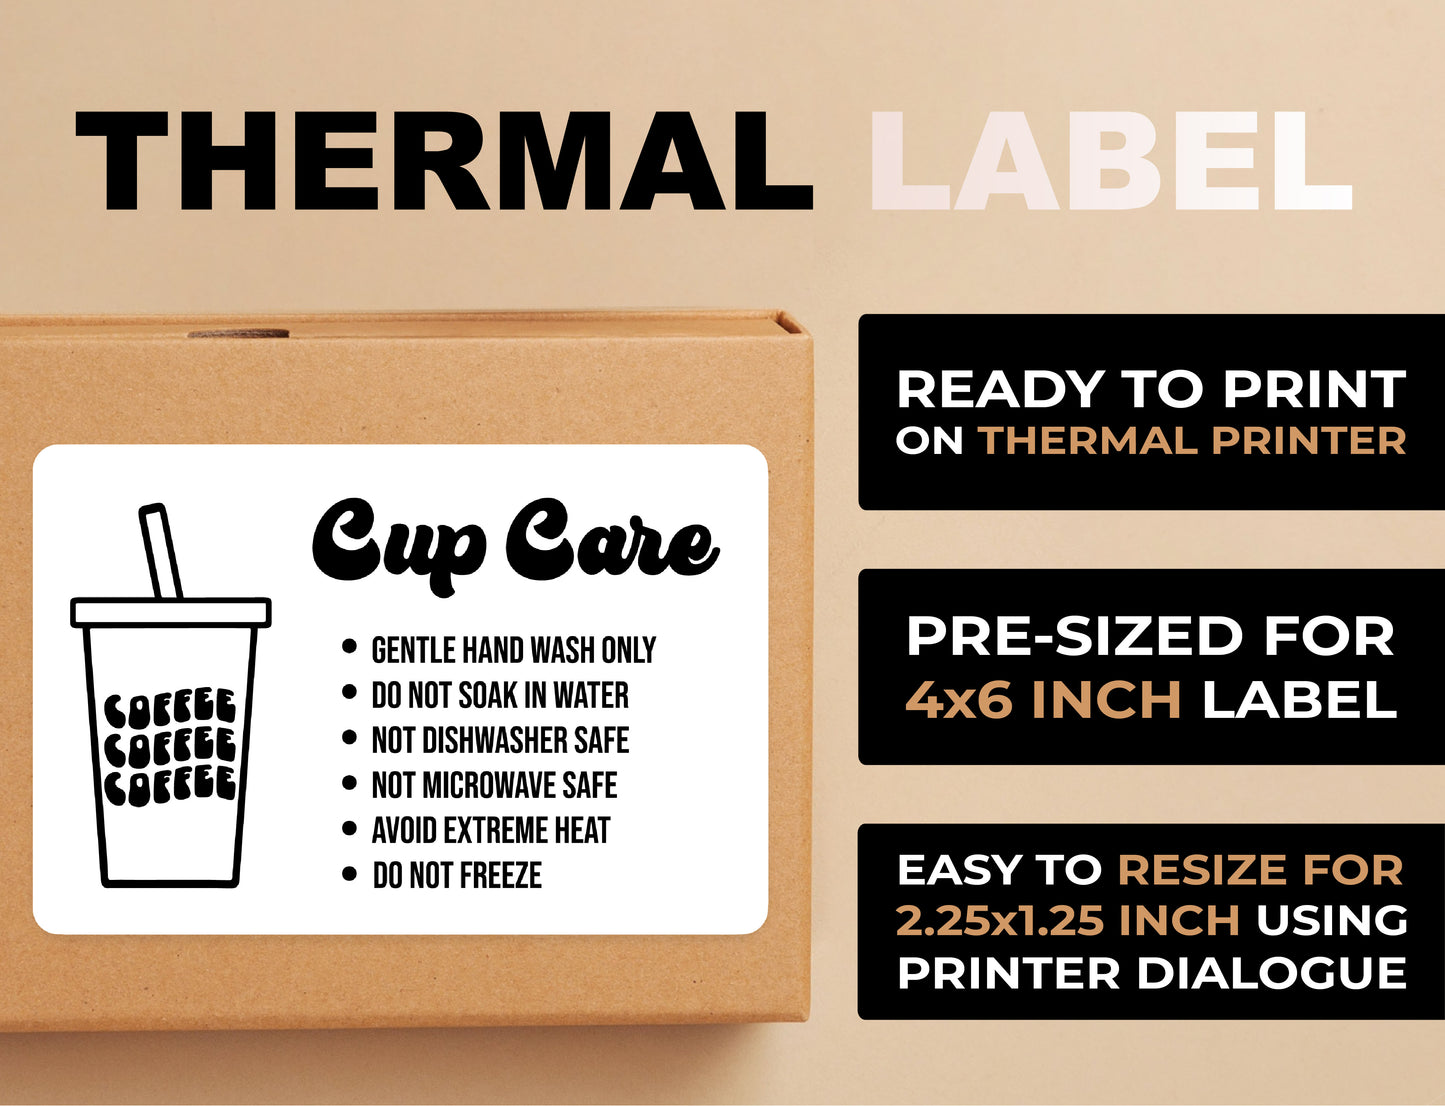 Tumbler Care Thermal Printer Label